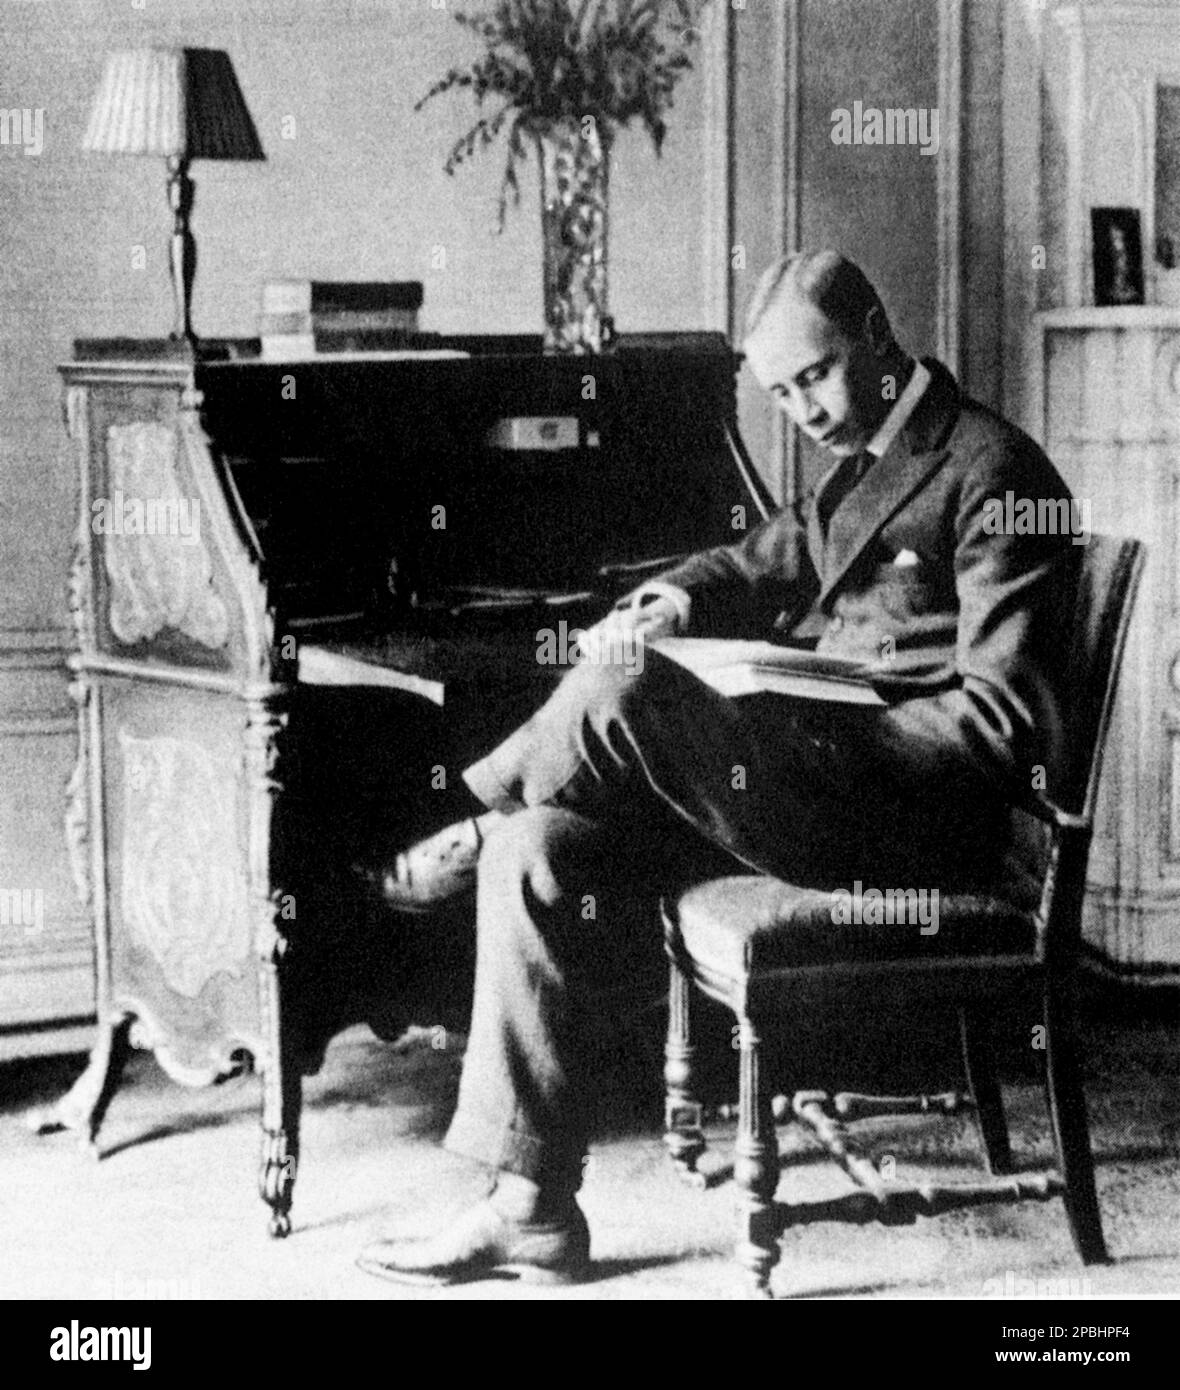 1919 : le compositeur russe SERGEJ PROKOFIEV ( Sergej Sergeïevic Prokof'ev, 1891 - 1953 ) , était un compositeur russe qui maîtrisait de nombreux genres musicaux et est venu à être admiré comme l'un des plus grands compositeurs du 20th siècle - Sergej Sergeïevic Prokofjev , Sergei , Sergueï ou Serge et Prokofief Prokofiev Prokofieff - BALLETS RUSSES de DIAGHILEV - Diagilev - COMPOSIORE - OPERA LIRICA - CLASSICA - CLASSIQUE - PORTRAIT - RITRATTO - MUSICISTA - MUSICA - pianiste - pianista - ANAVANTALTIO - pupitre - ARTLETORE - lecteur - lecteur - GUITATORE - Scrivania --- ARCHIVIO G. Banque D'Images